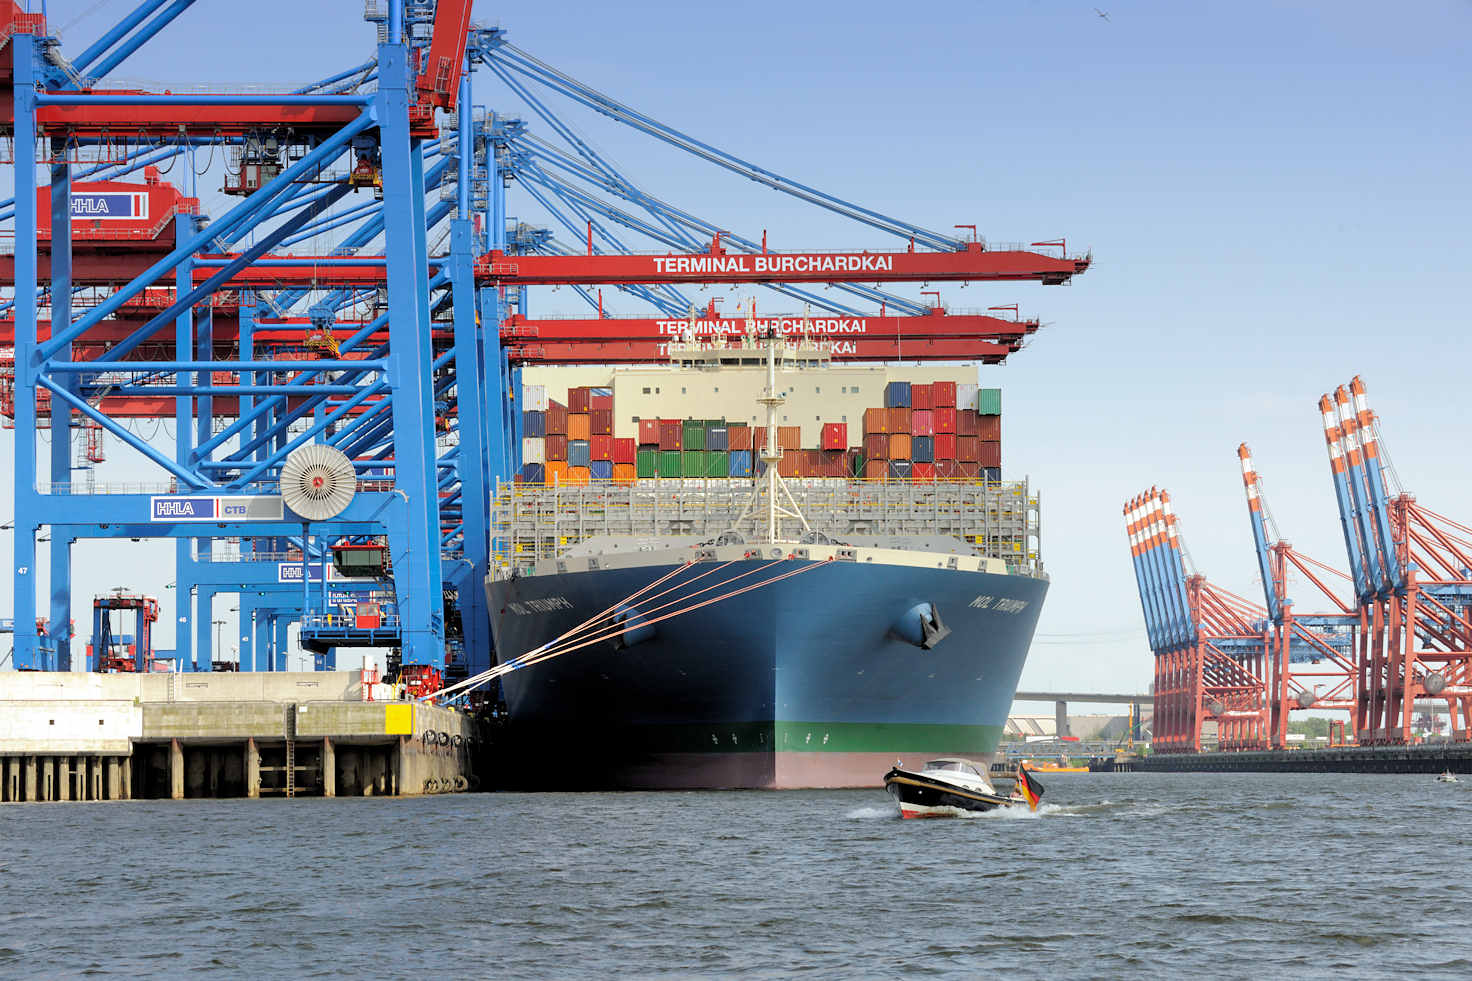 0355 Das Containerschiff MOL TRIUMPH liegt im Hamburger Hafen. | Container Terminal Burchardkai CTB